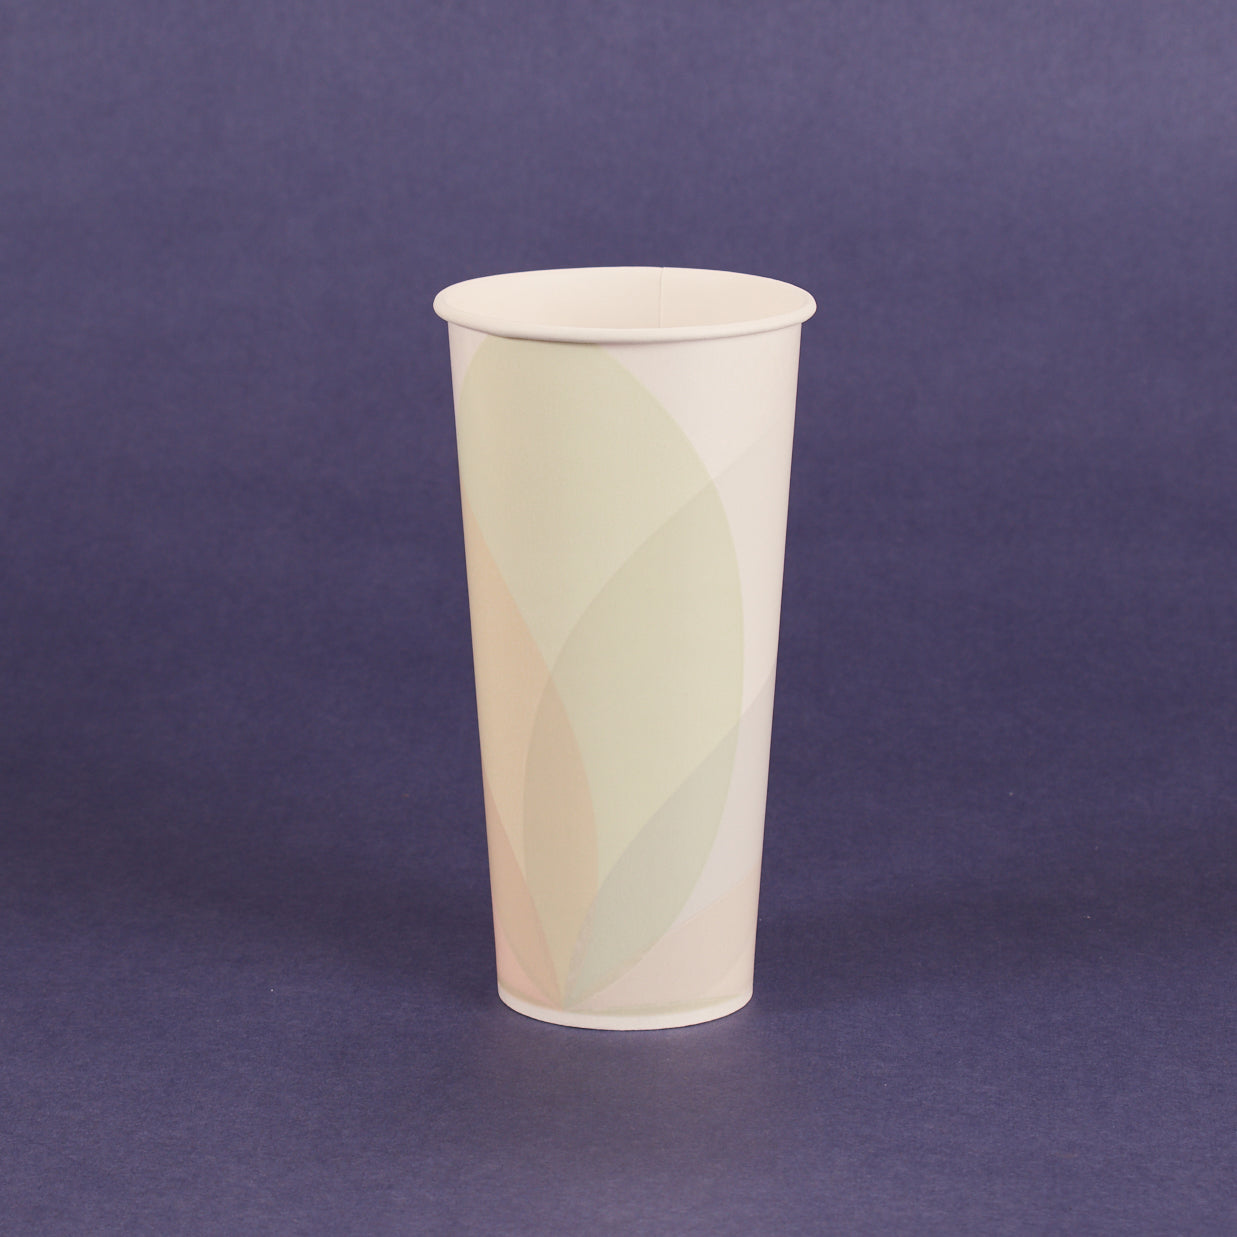 22oz Paper Cold Cups - Generic (1,000/cs)